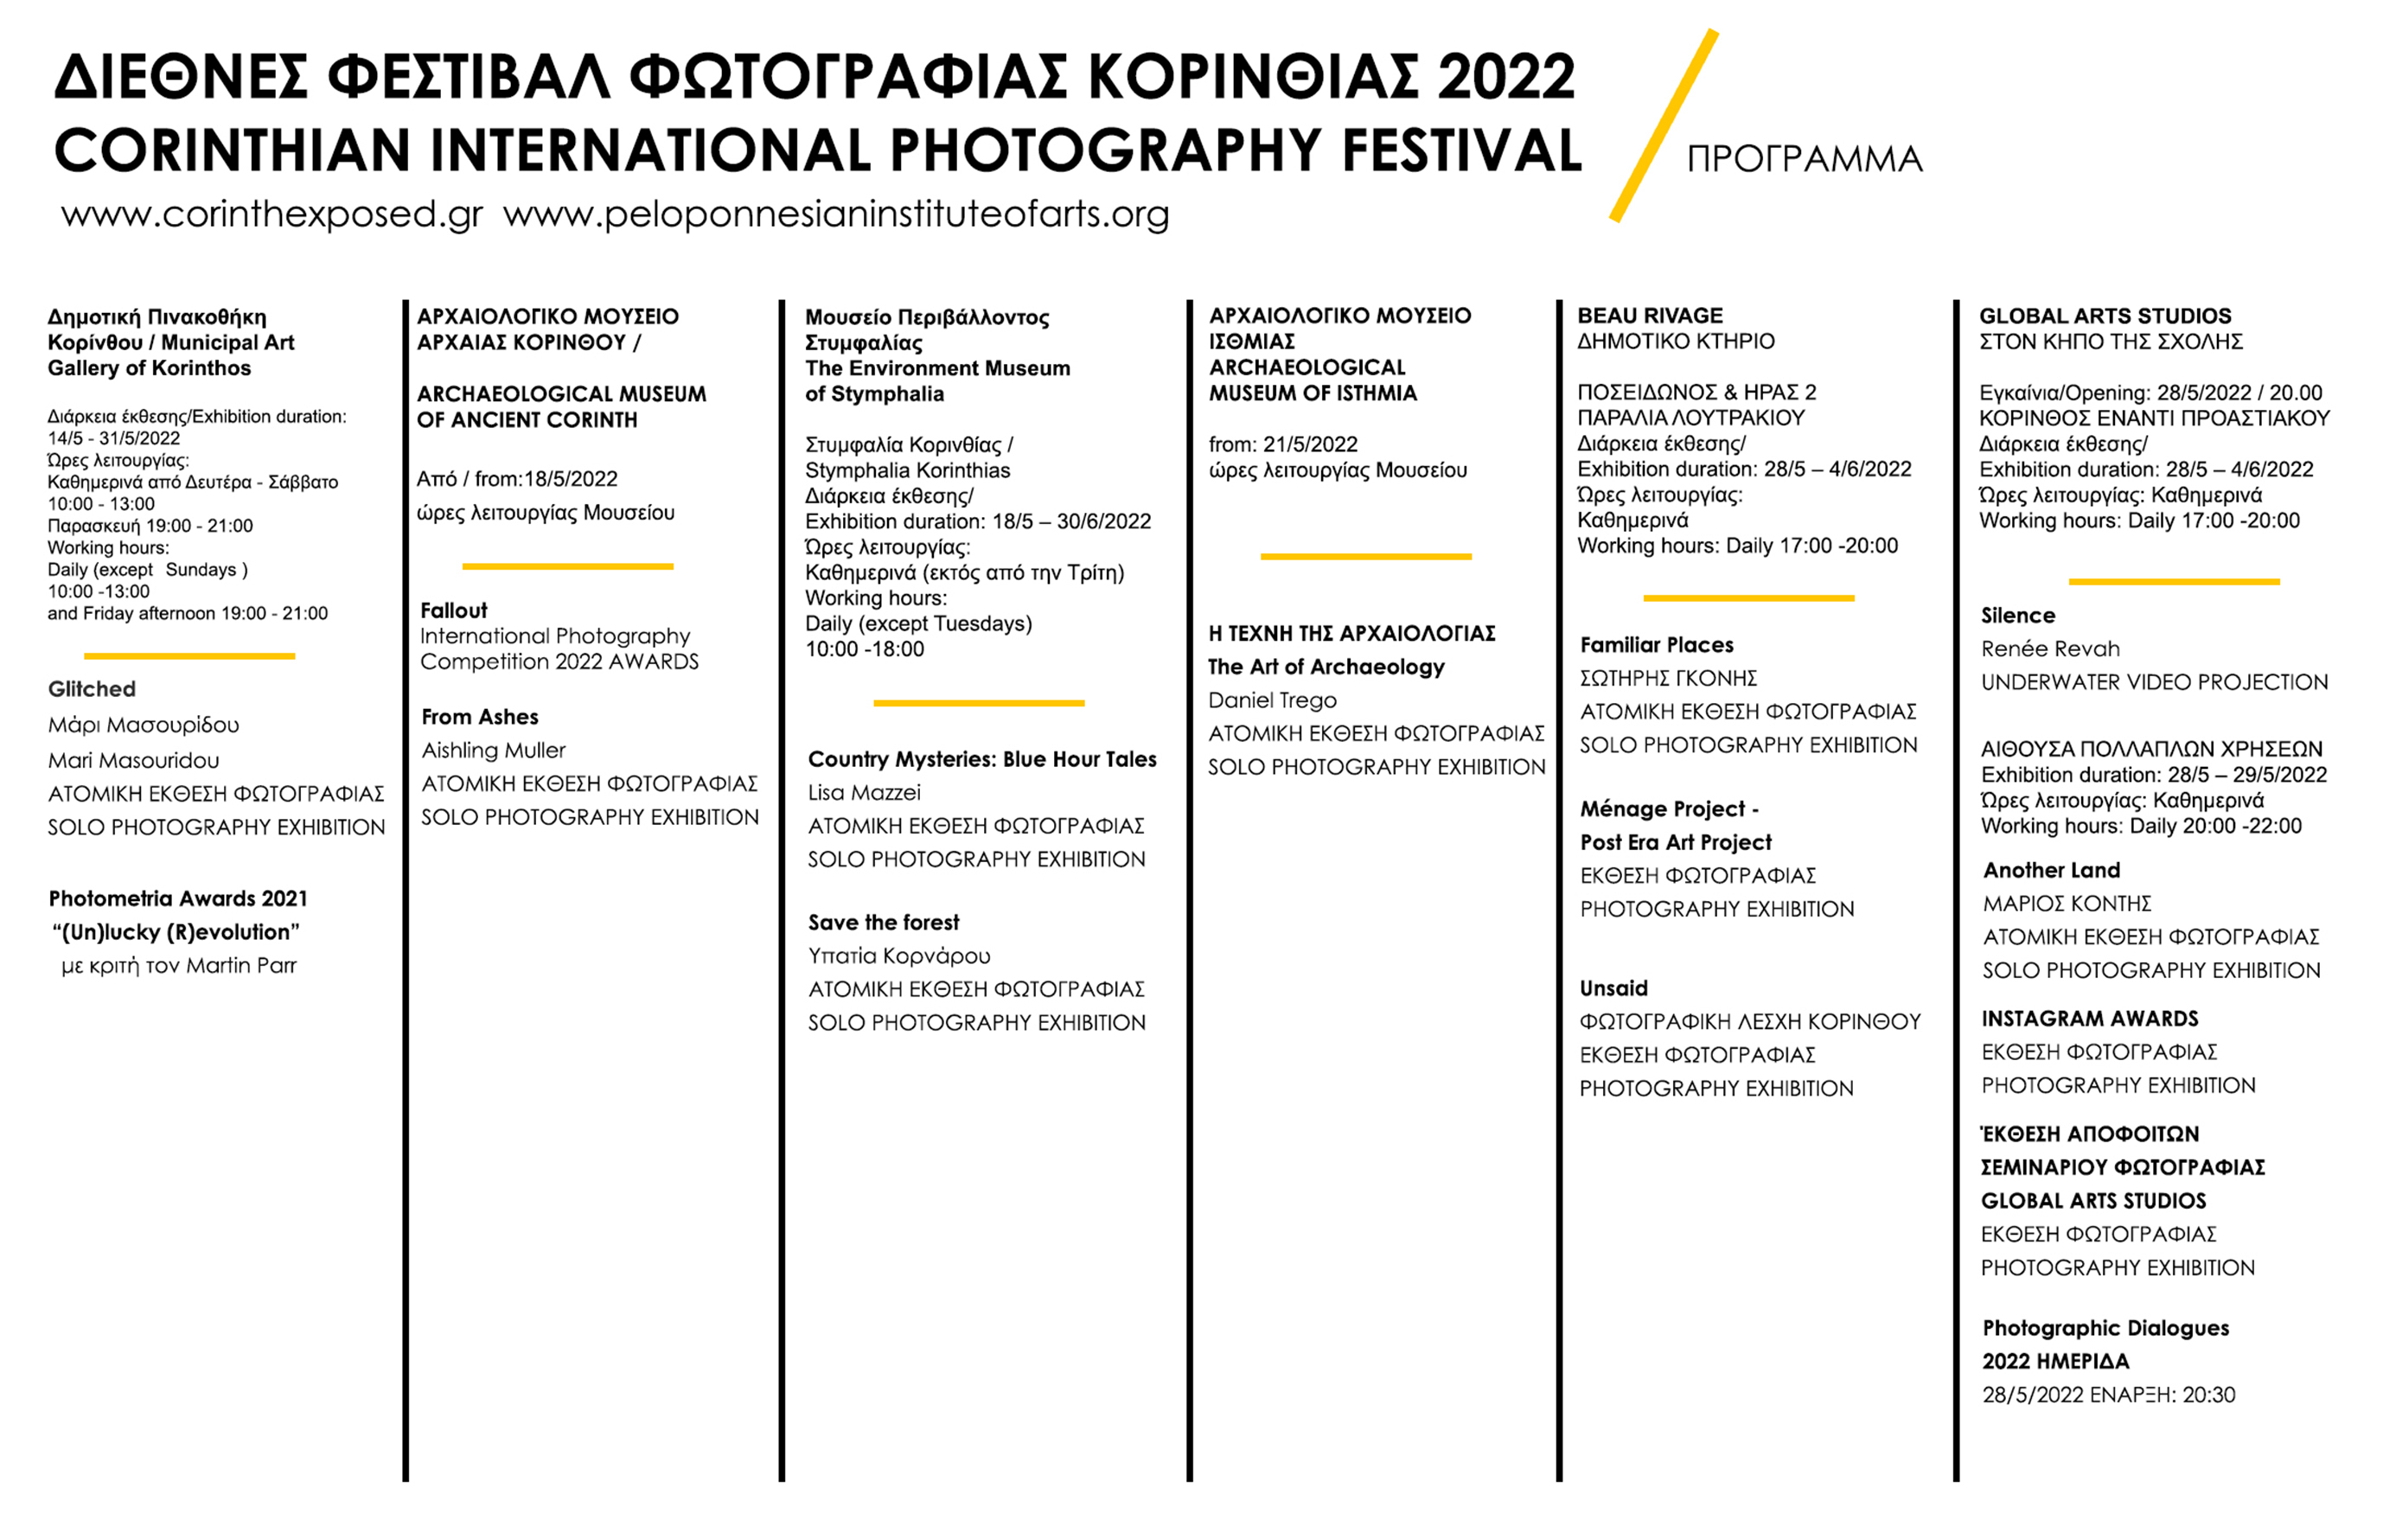 Πρόγραμμα Corinth Exposed 2022